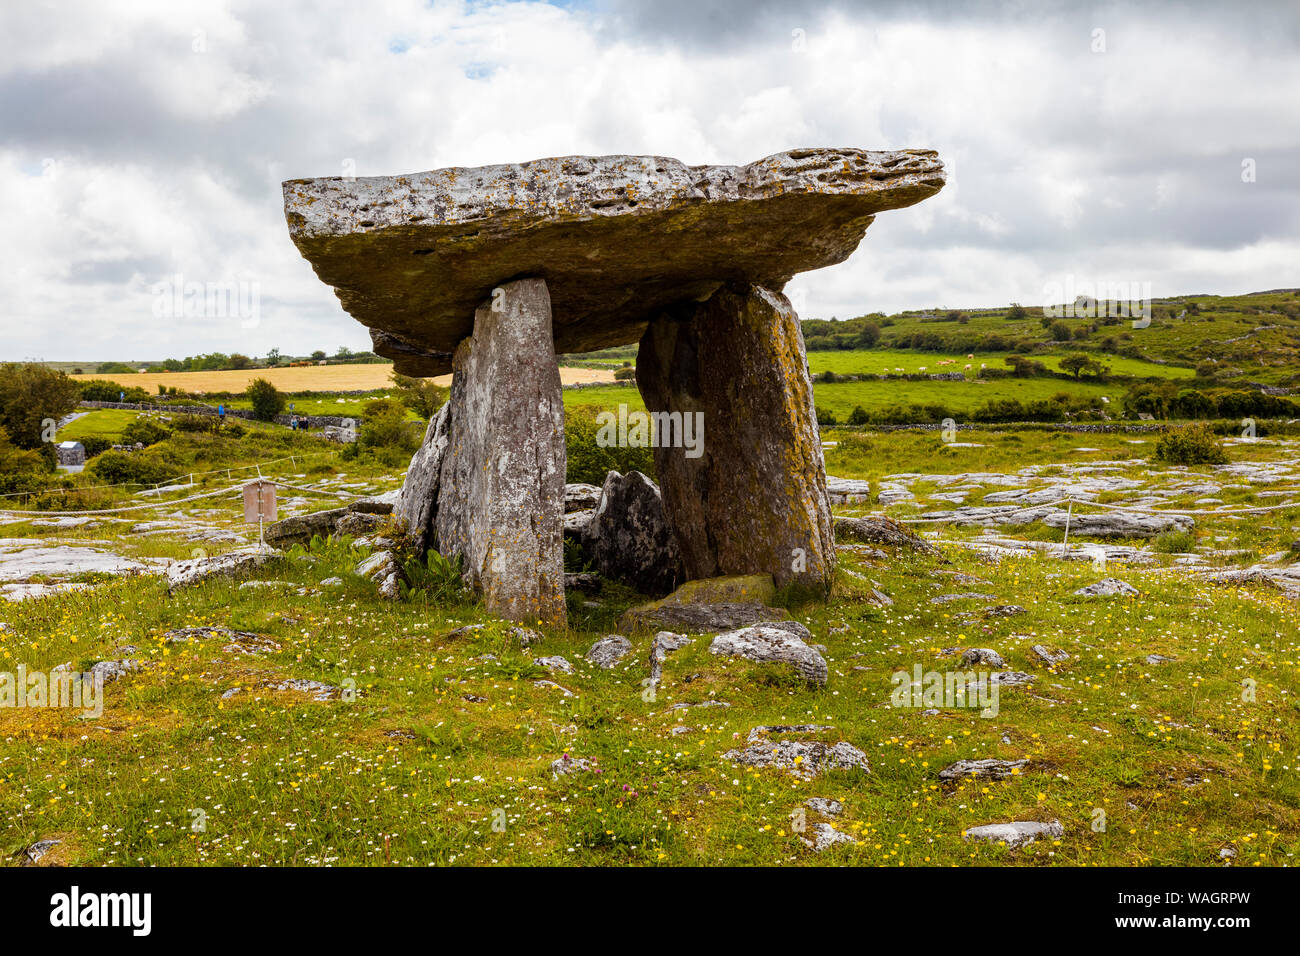 Portail tombe mégalithique construite en quatrième millénaire avant J.-C. dans la région de Burren de l'Irlande Banque D'Images